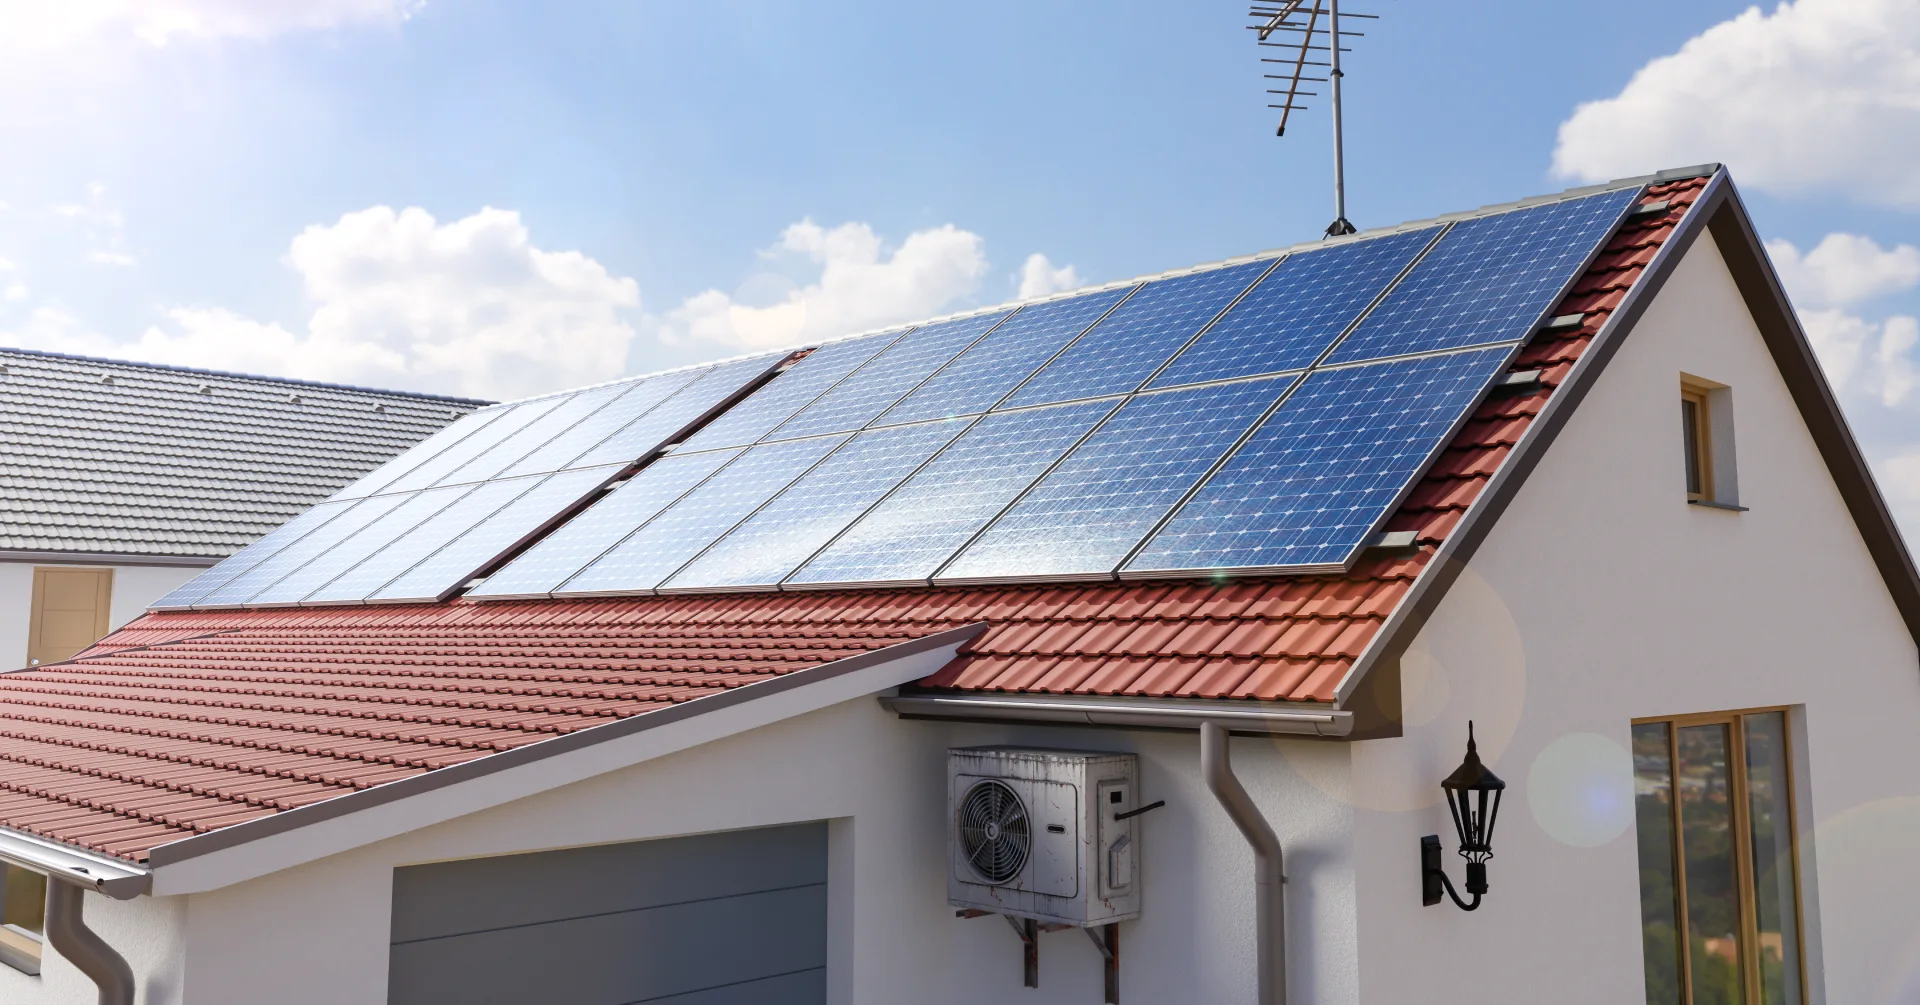 Une inclinaison sud ouest sur toiture de maison permet de maximiser la quantité d'énergie solaire captée par les panneaux, et donc de produire davantage d'électricité